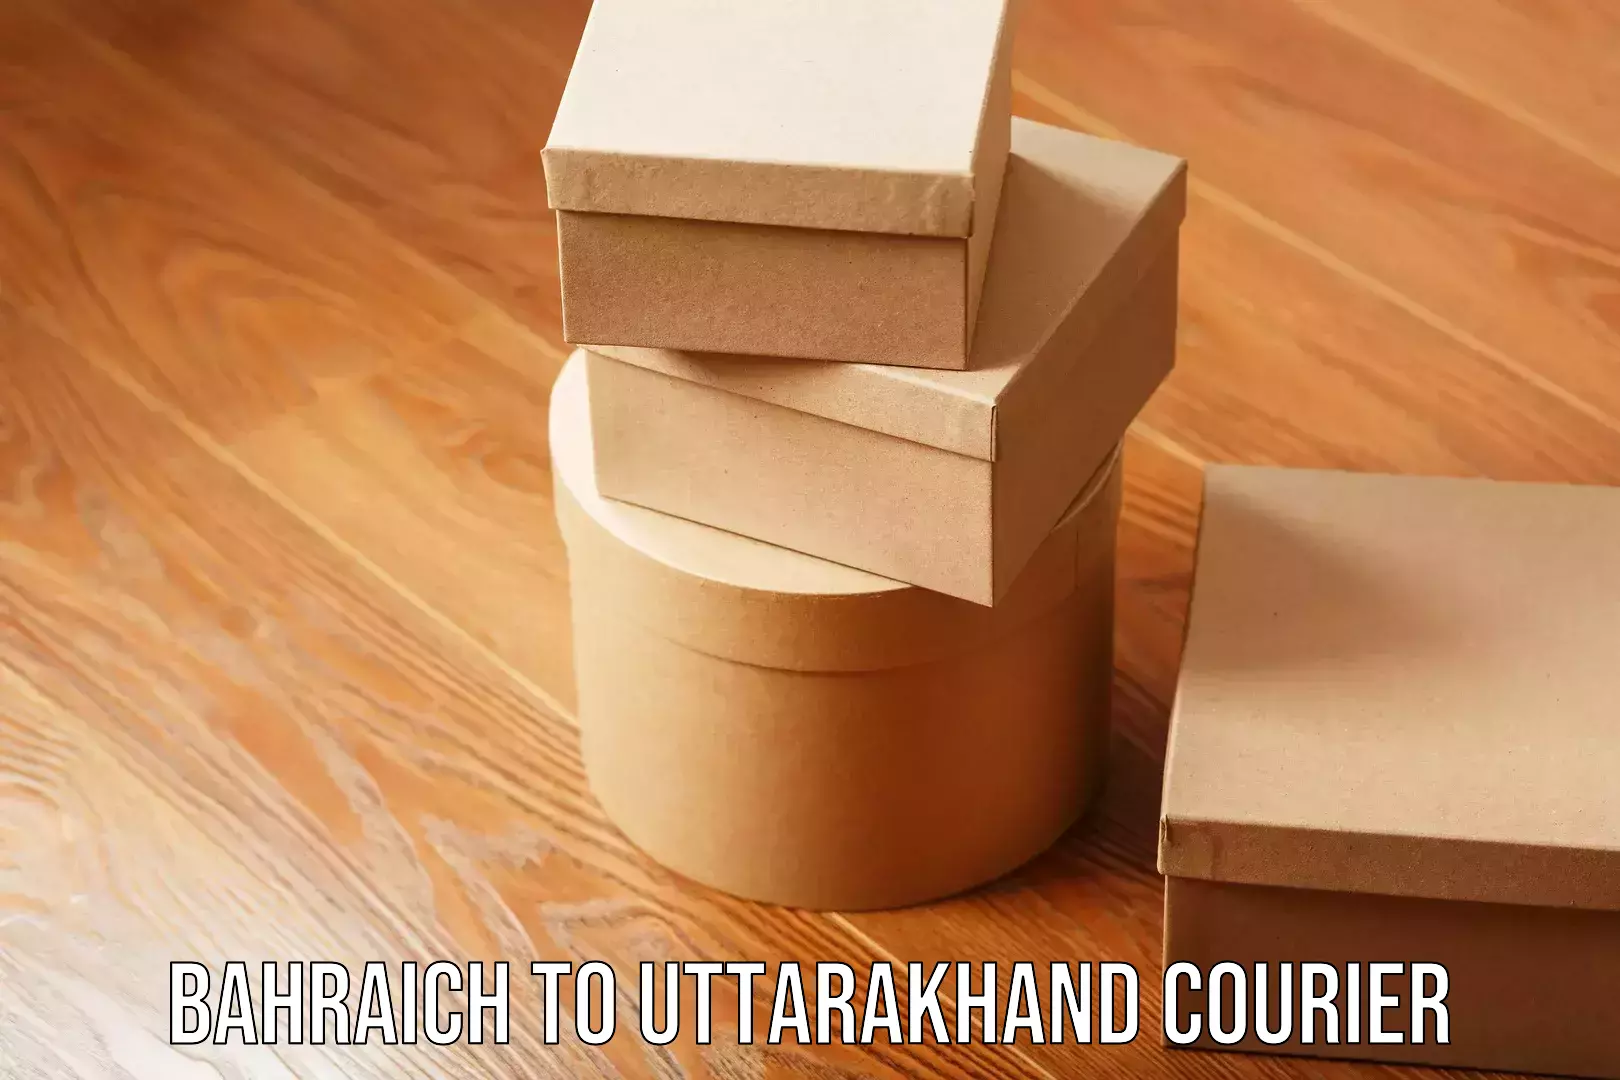 E-commerce fulfillment Bahraich to Uttarakhand